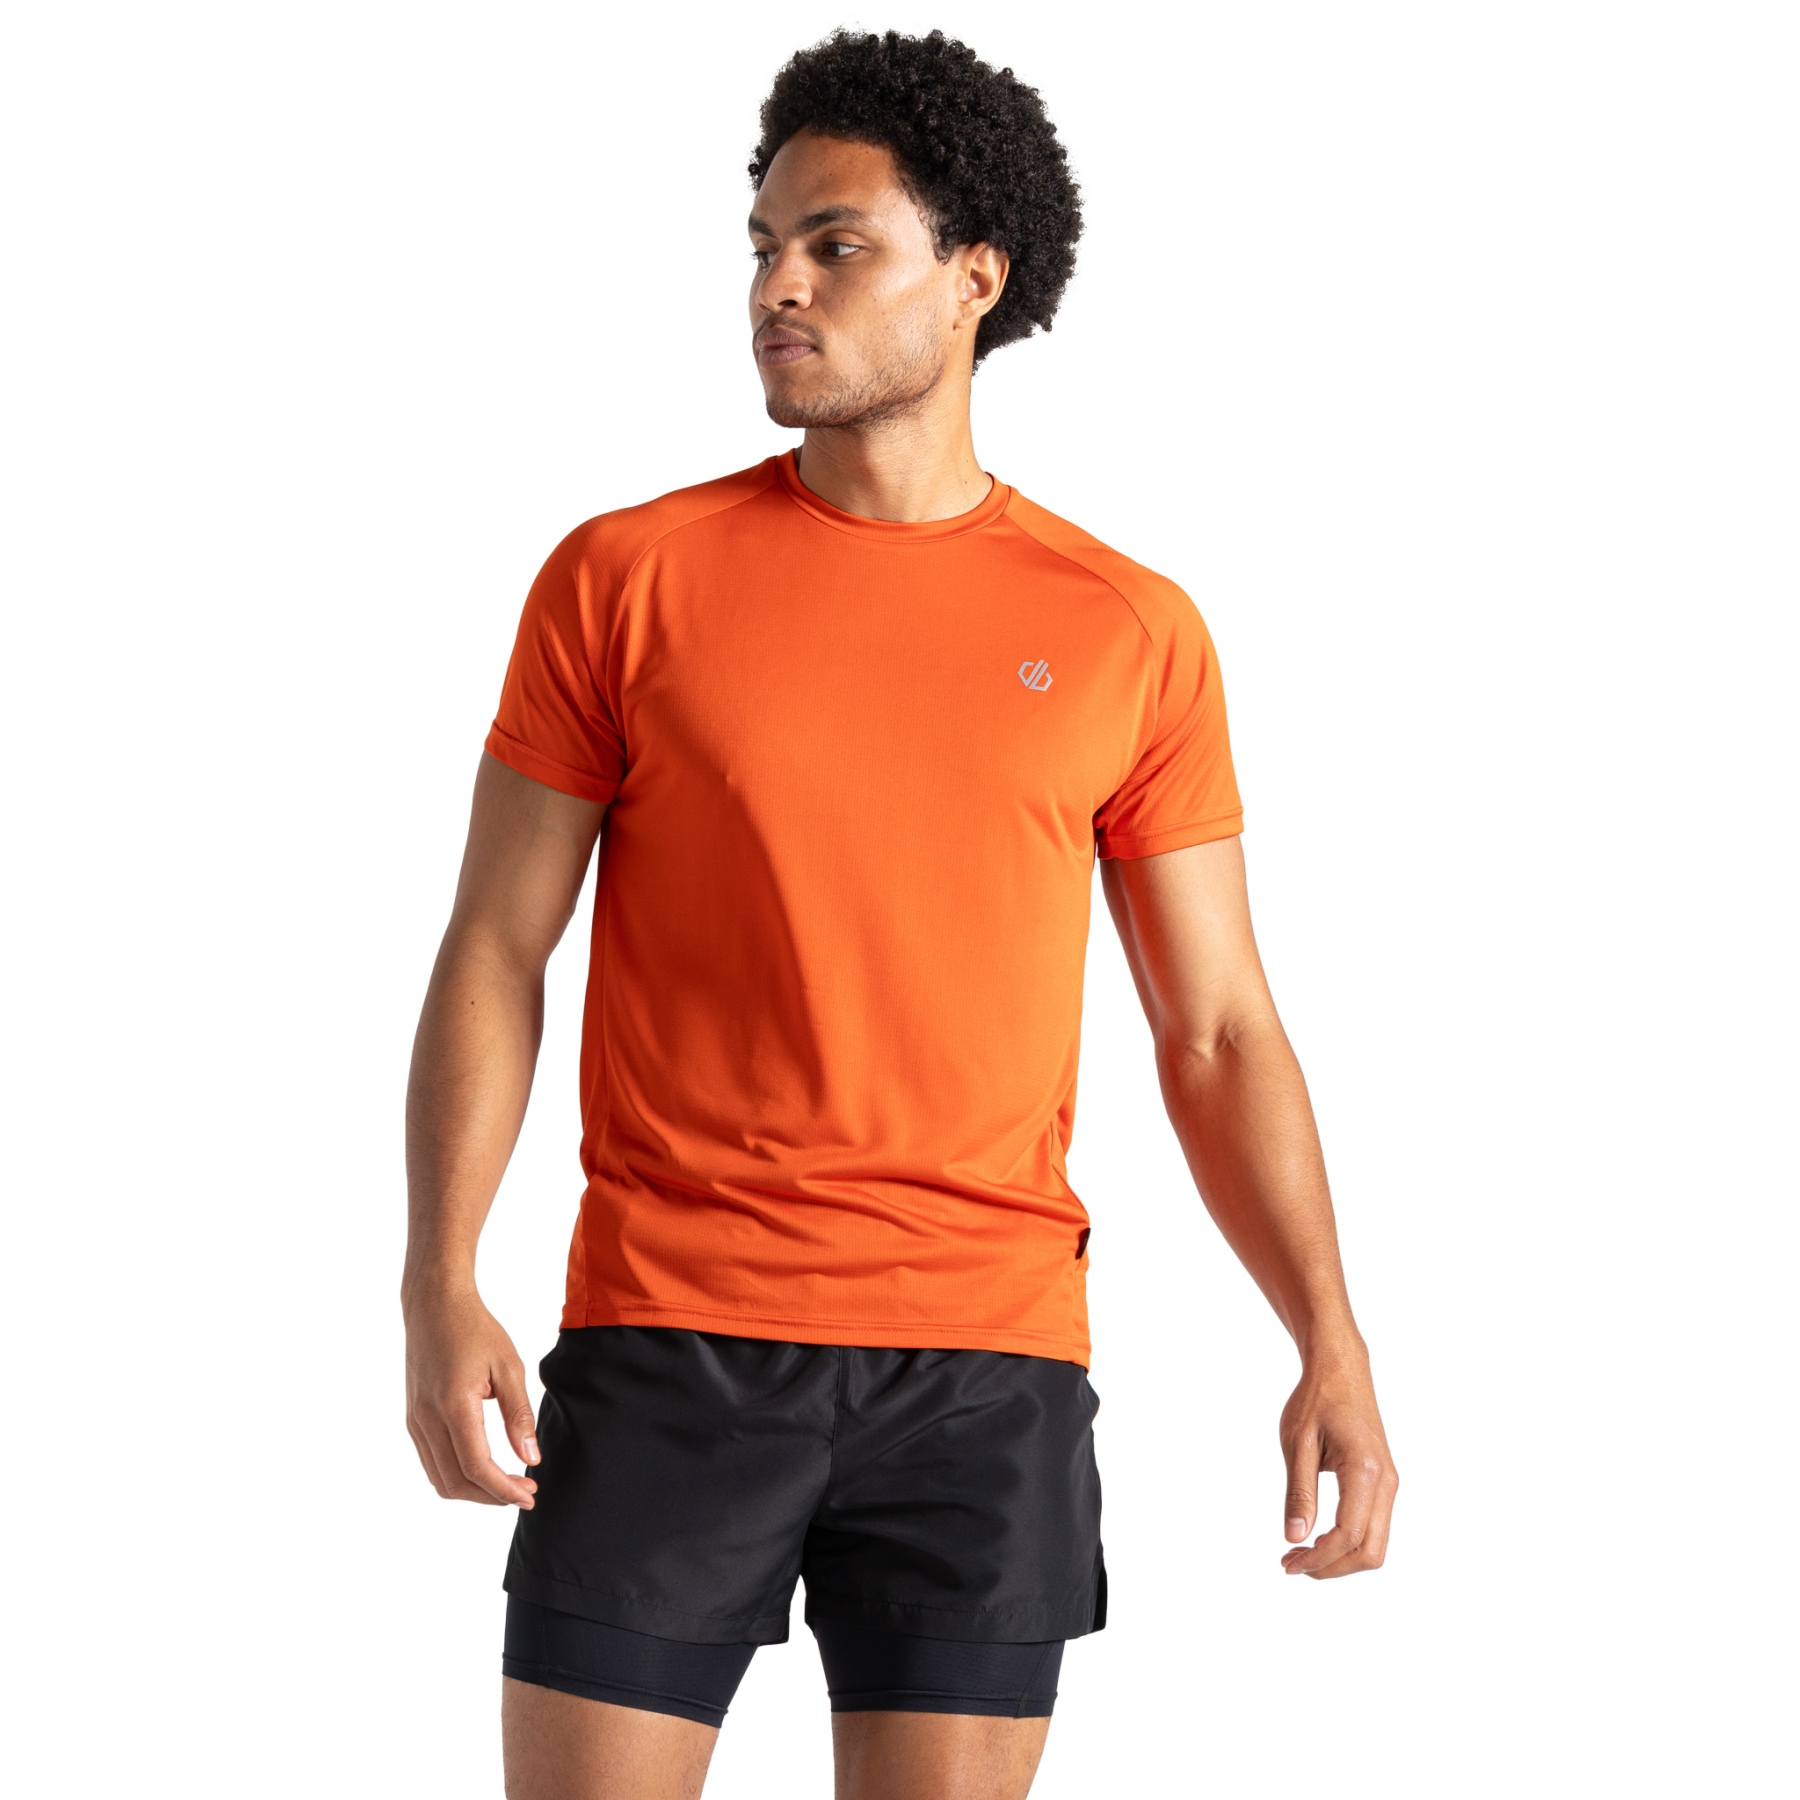 Produktbild von Dare 2b Accelerate T-Shirt Herren - DAK Cinnamon